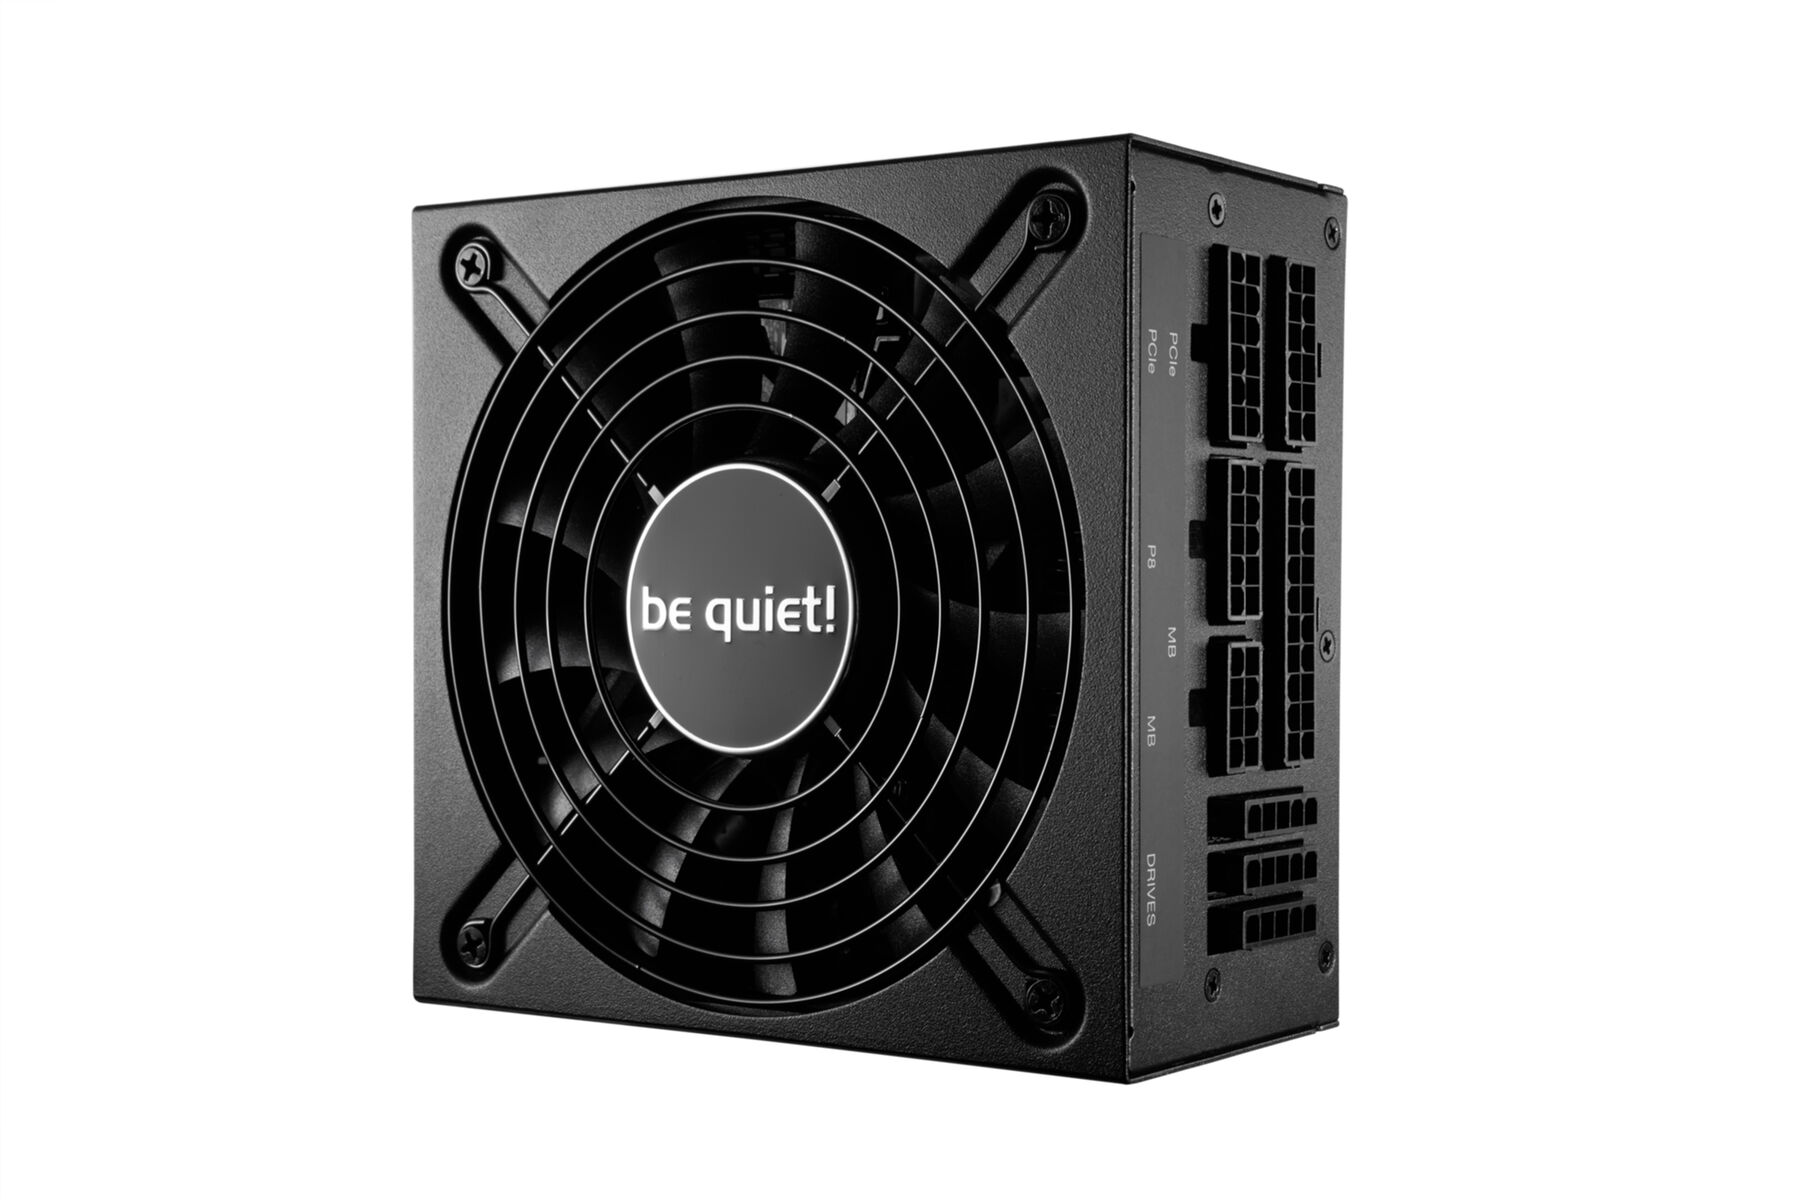 Watt Power PC BE QUIET! Netzteil L SFX 600